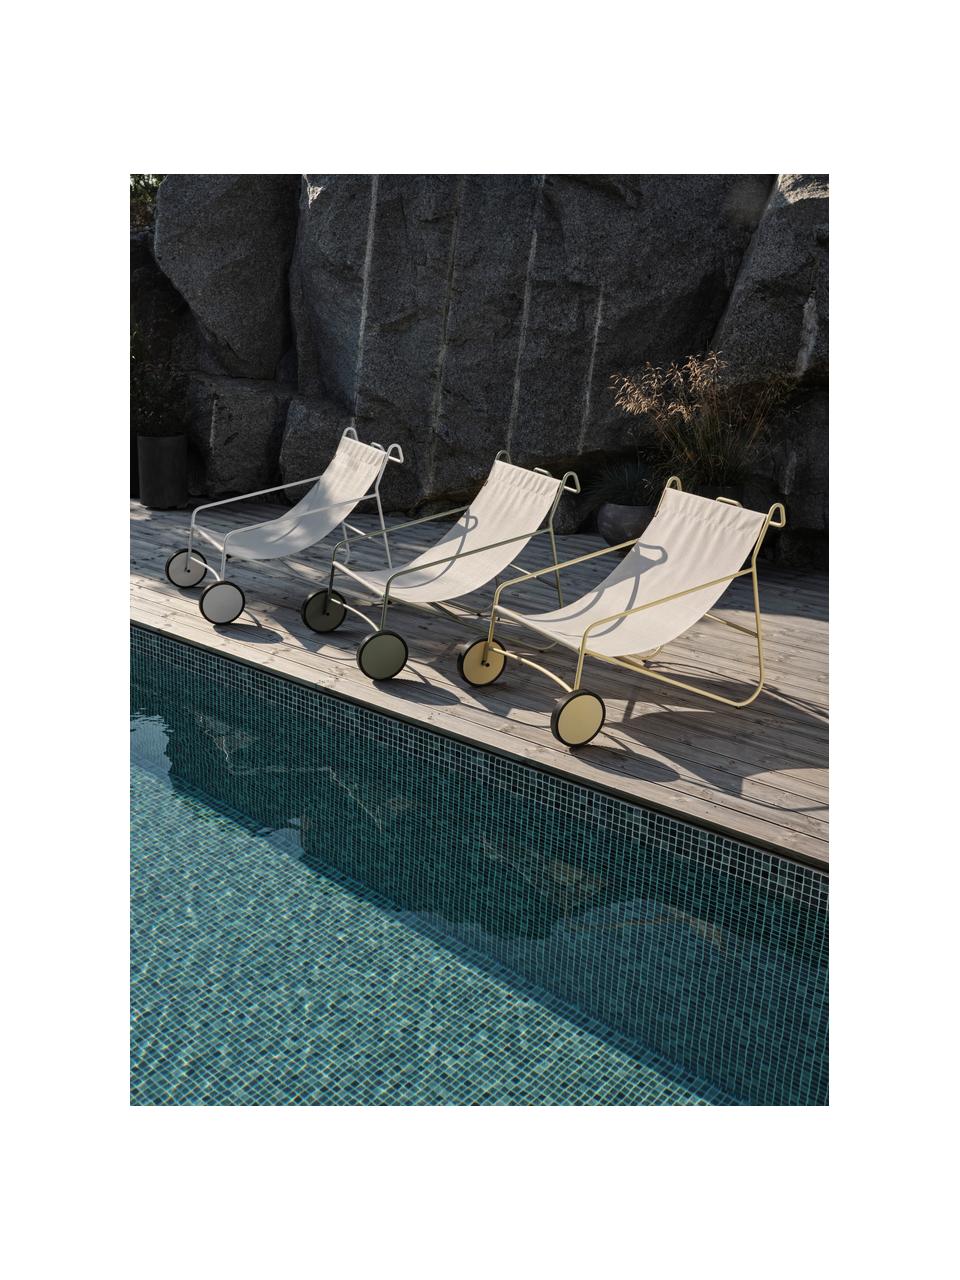 Tuin loungefauteuil Poul met wieltjes, 2 stuks, Bekleding: textiel, Frame: gecoat aluminium, Gebroken wit, saliegroen, B 74 x D 106 cm